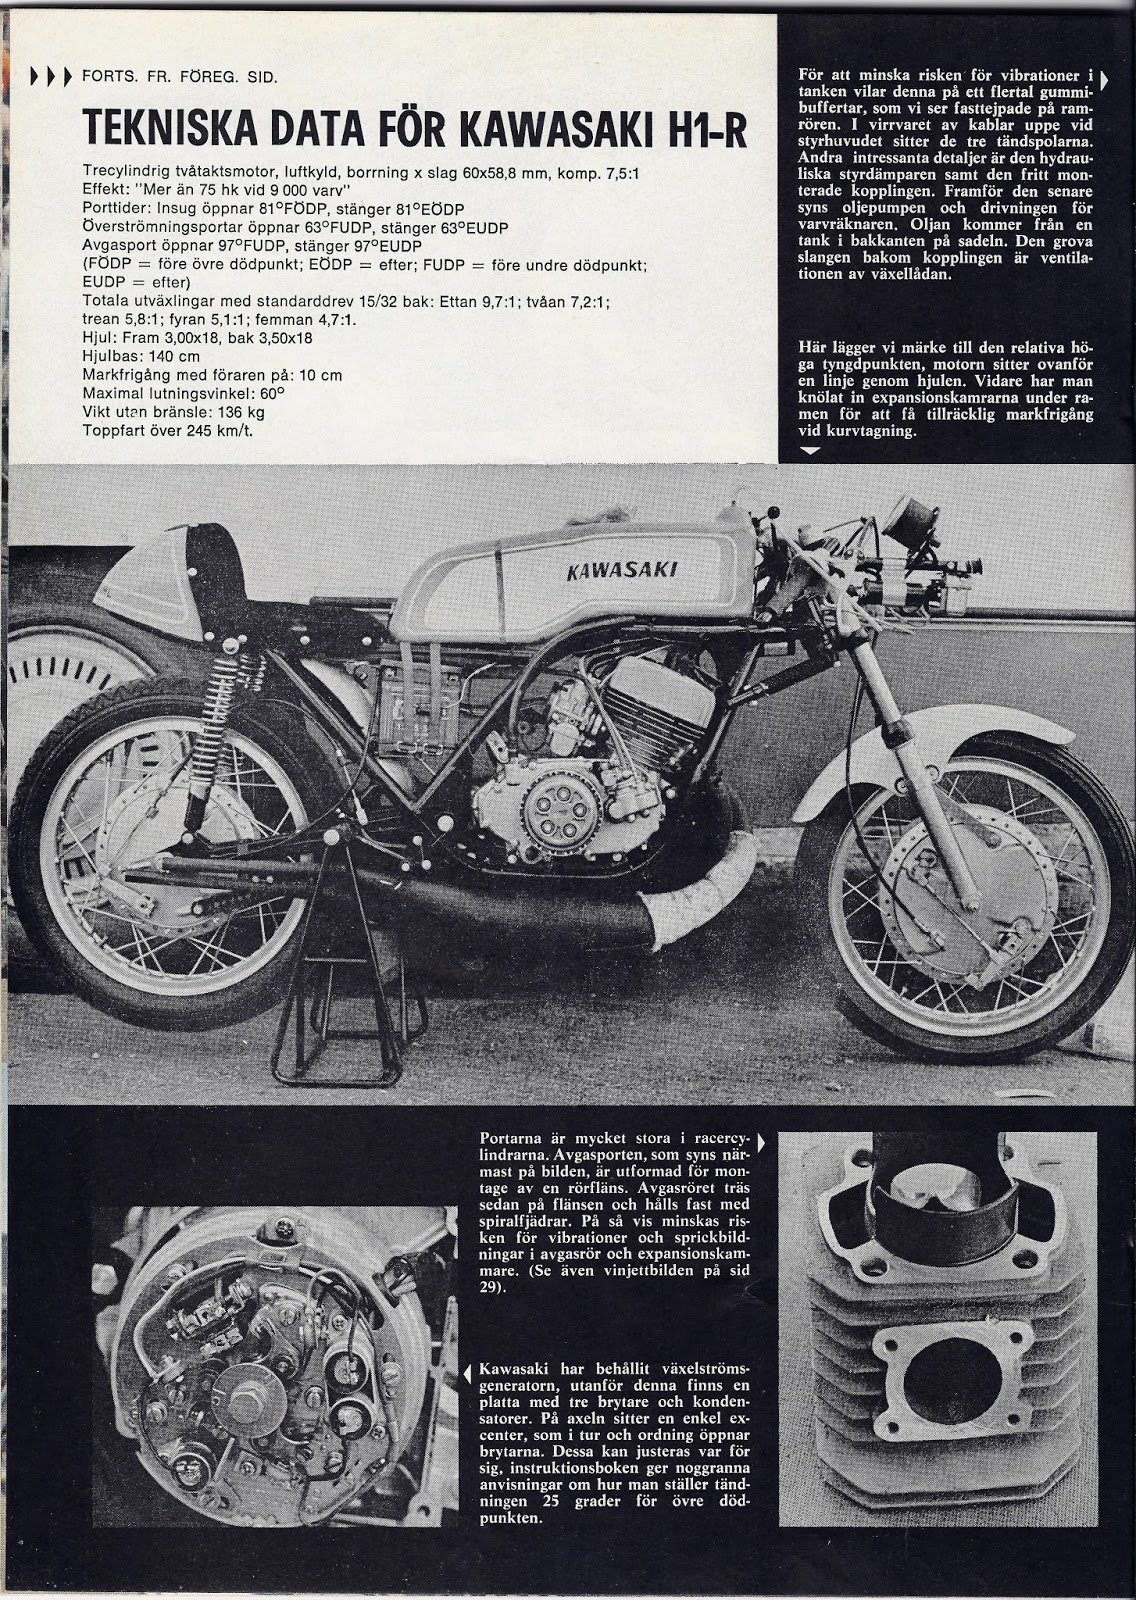 Kawasaki H1R 1970. Racing history.: 2017